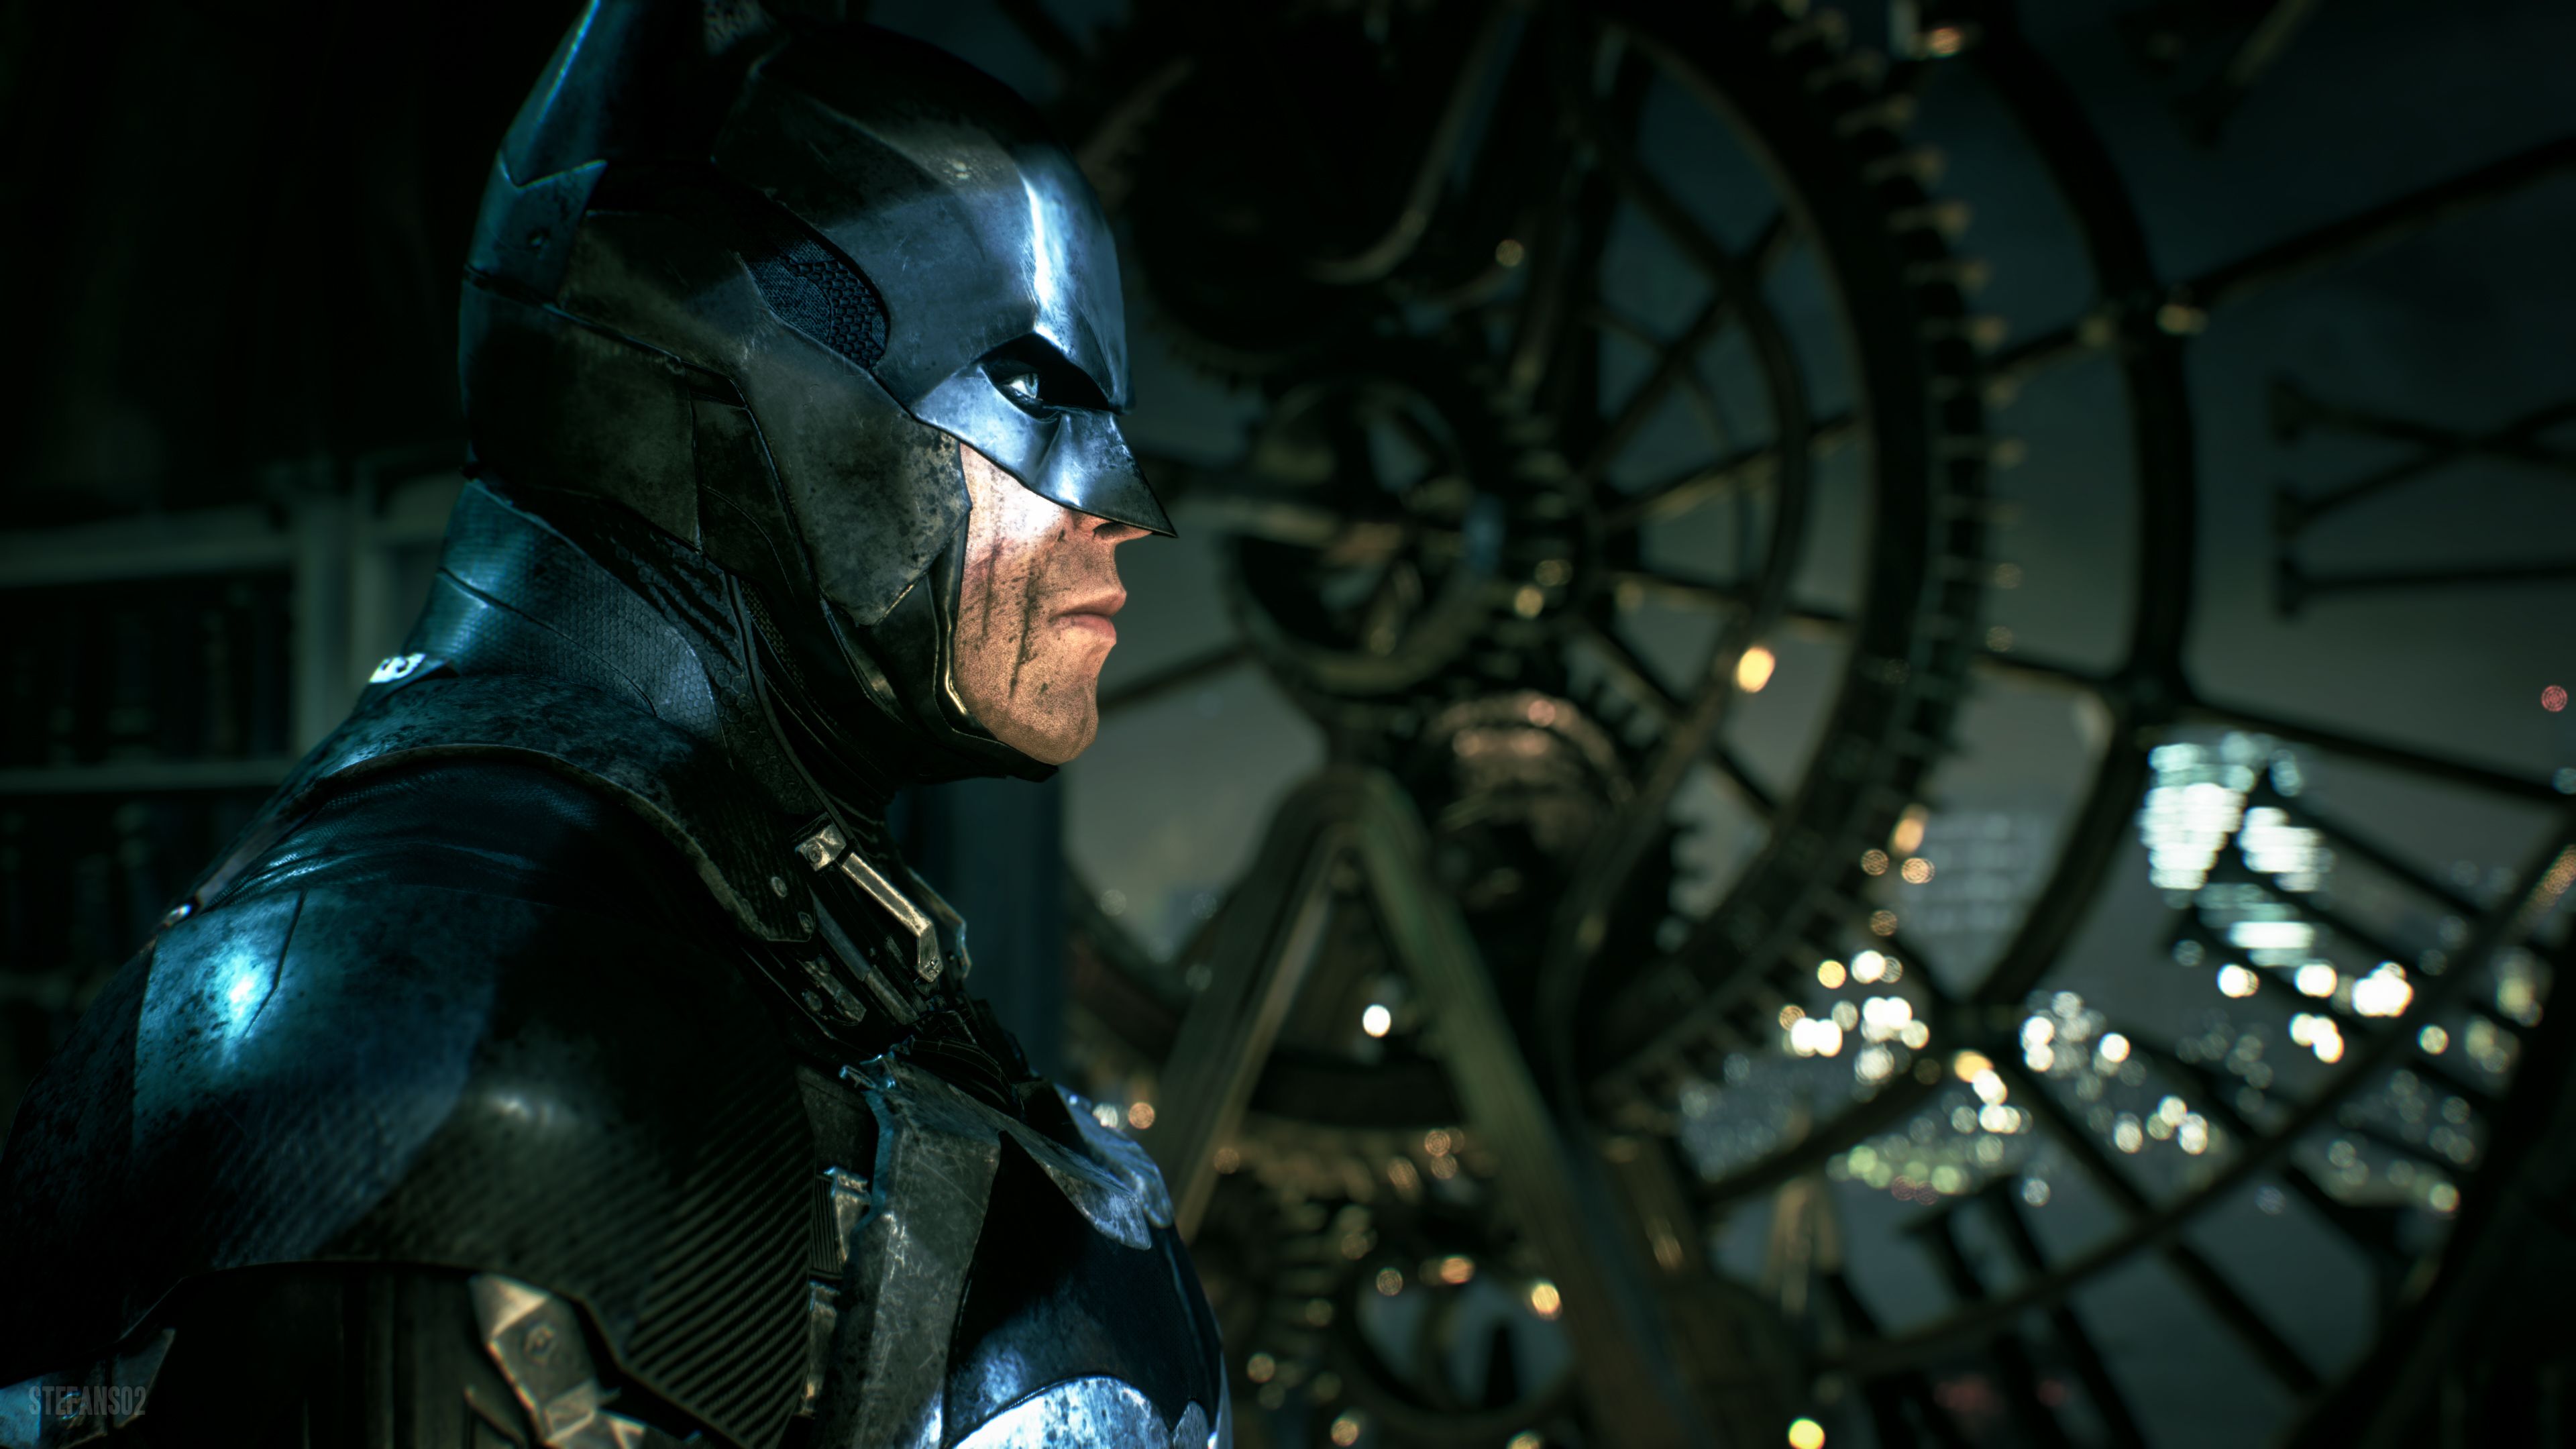 Batman: Arkham Knight / The Dark Knight 4k Ultra HD Wallpaper